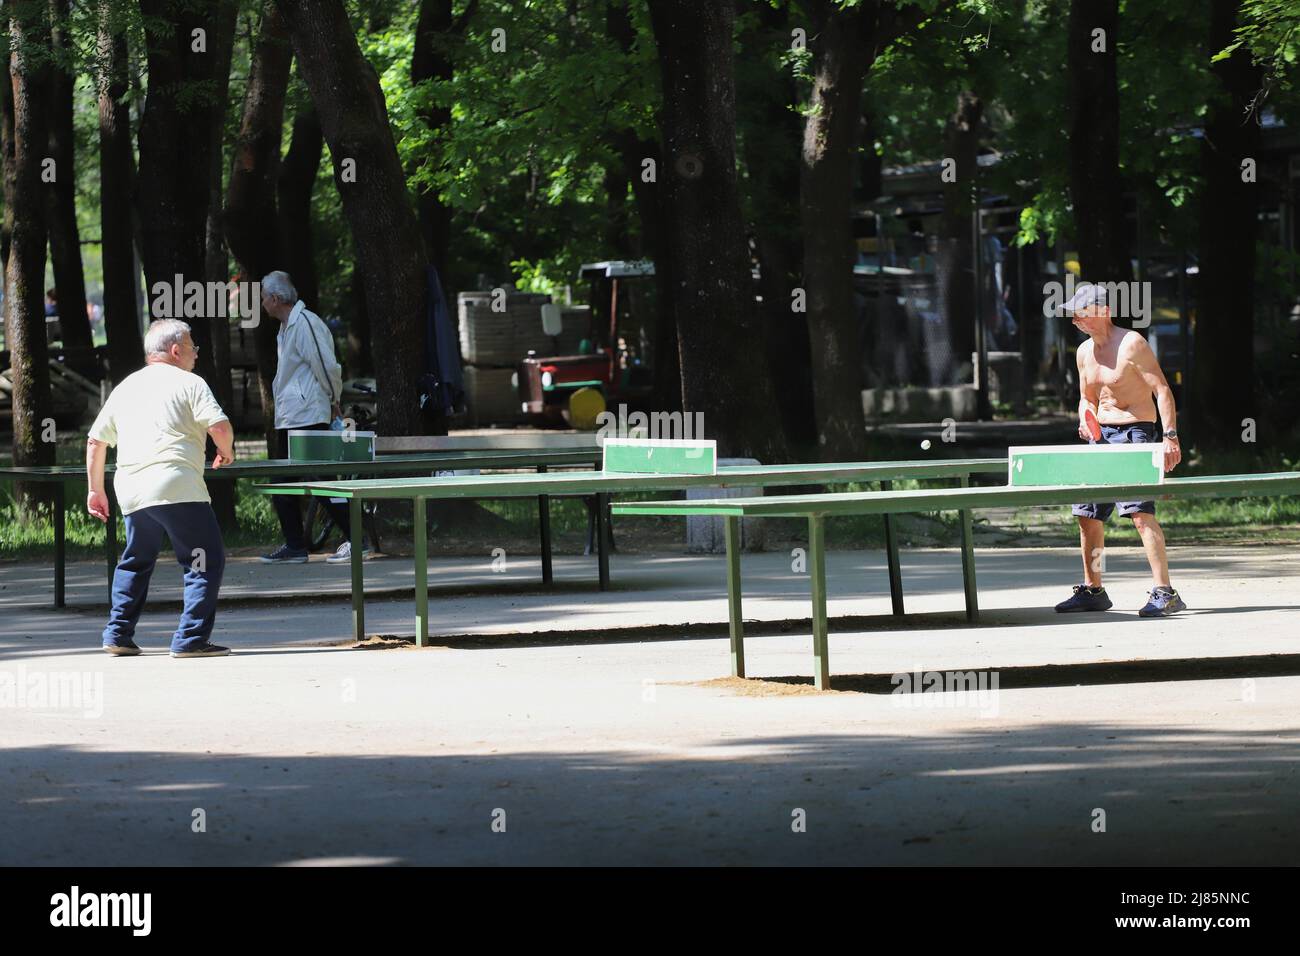 La gente juega al tenis de mesa en el parque de Sofía, Bulgaria el 05/13/2022 Foto de stock